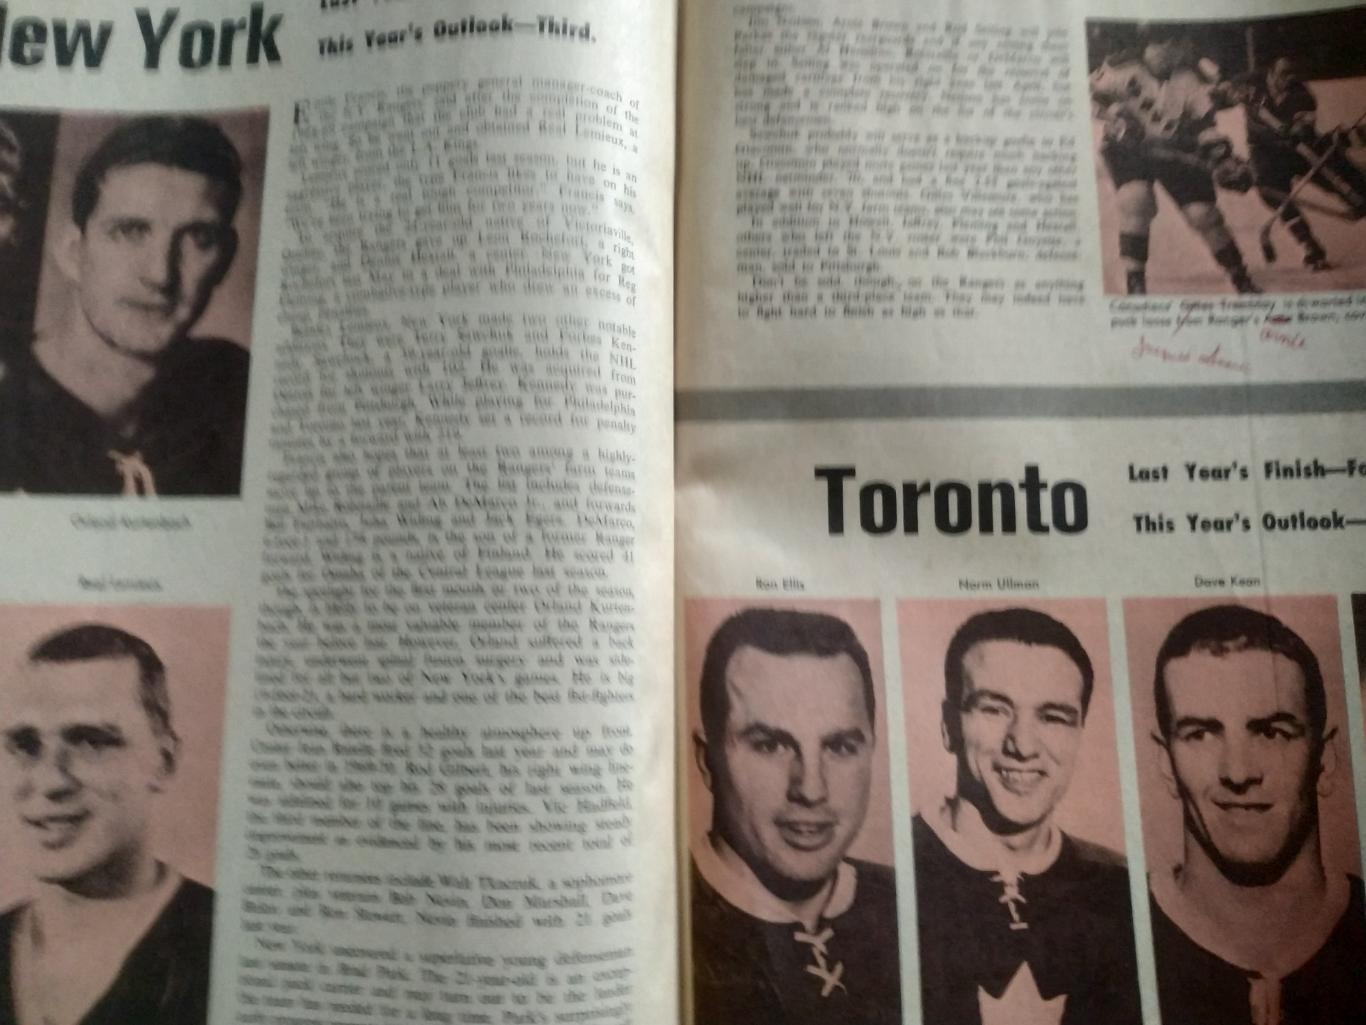 ЖУРНАЛ СПРАВОЧНИК НХЛ СПОРТ РЕВЬЮ ПРО ХОКЕЕЙ 1969-70 NHL SPORT REVIEW PRO HOCKEY 6